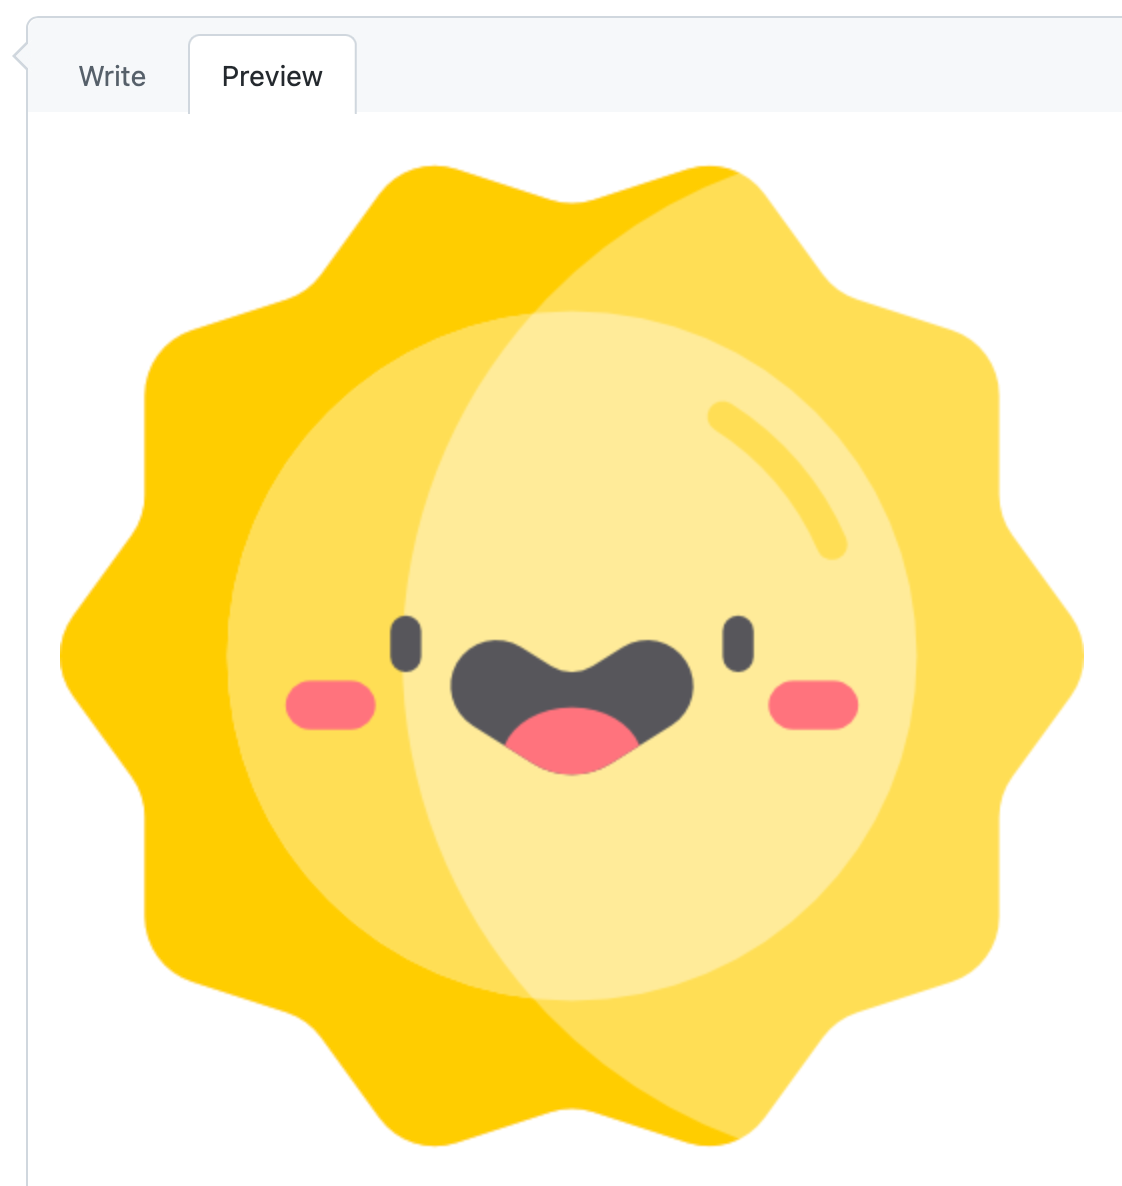 Captura de tela da guia "Visualização" de um comentário do GitHub, no modo claro. Uma imagem de um sol sorridente preenchendo a caixa.